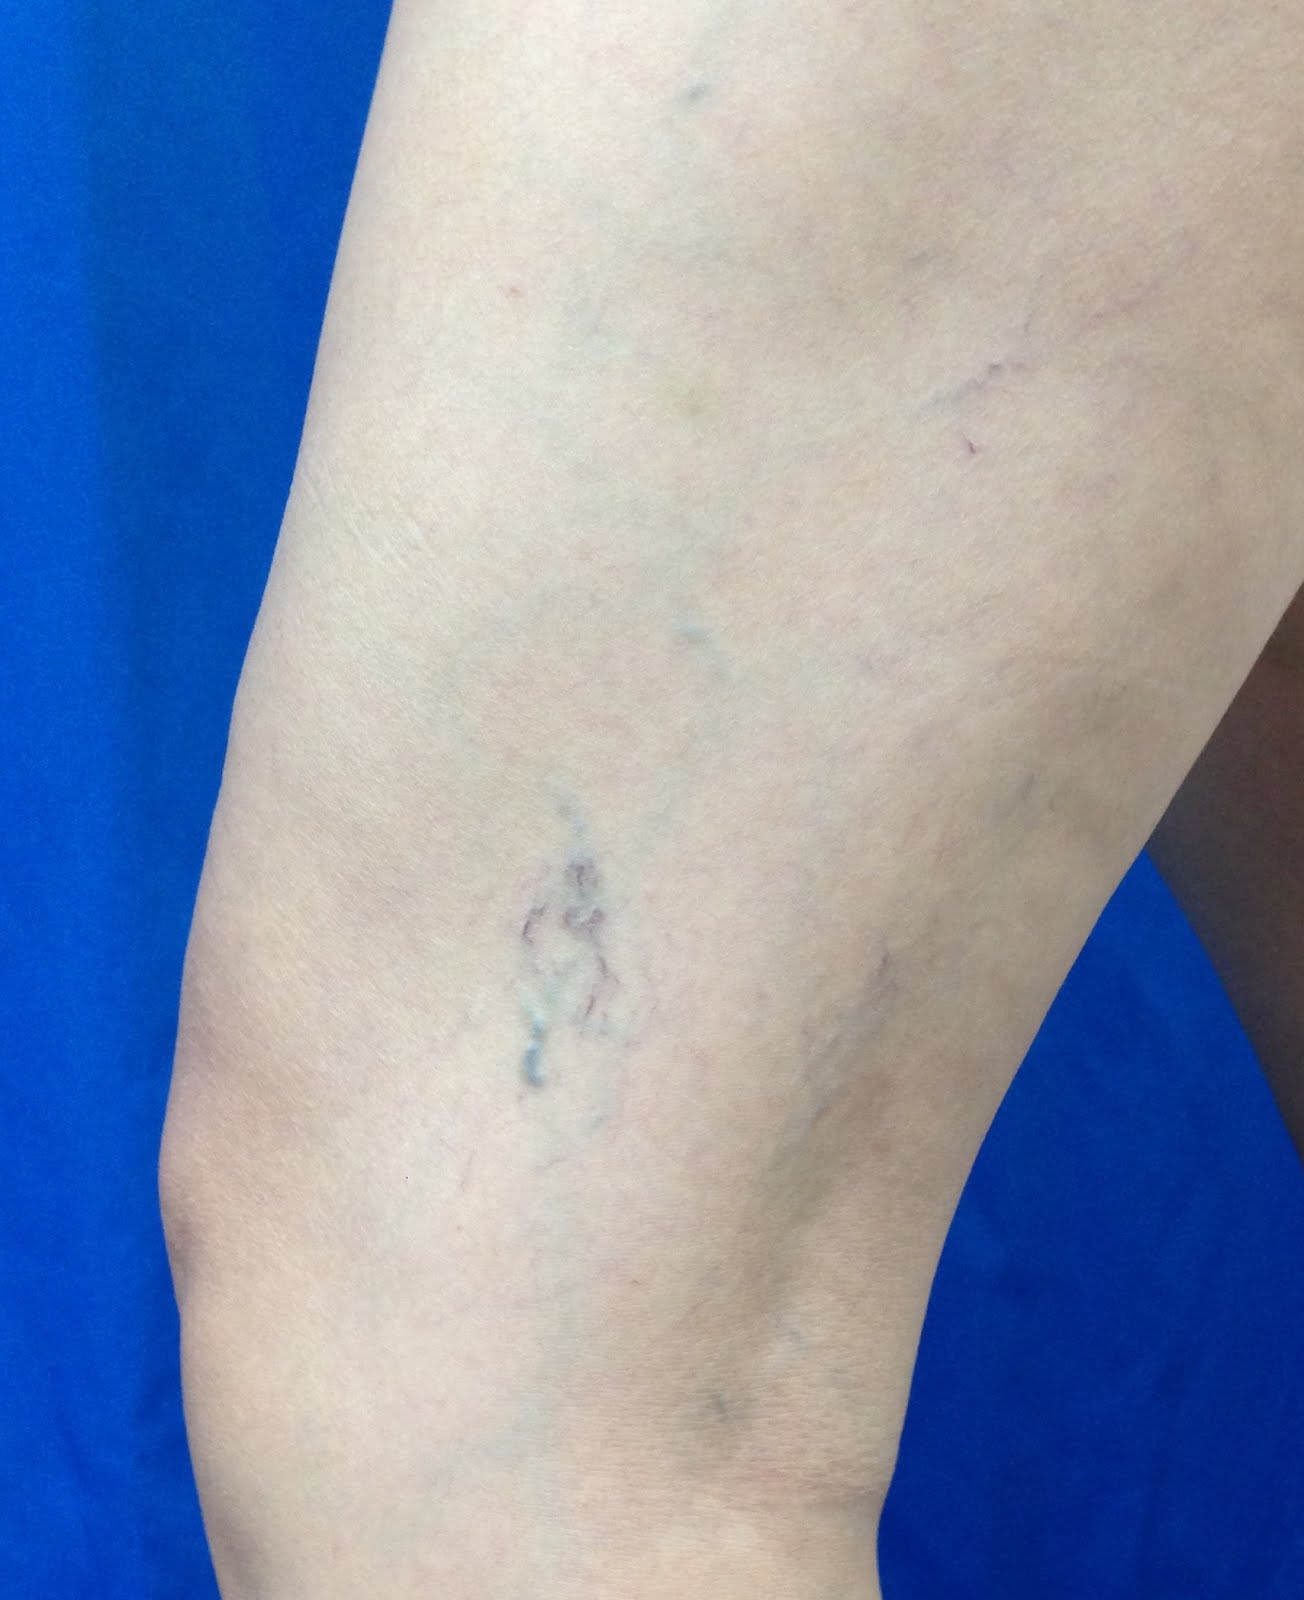 小腿皮膚有明顯的血管發炎發腫發癢之過敏反應 – im5481